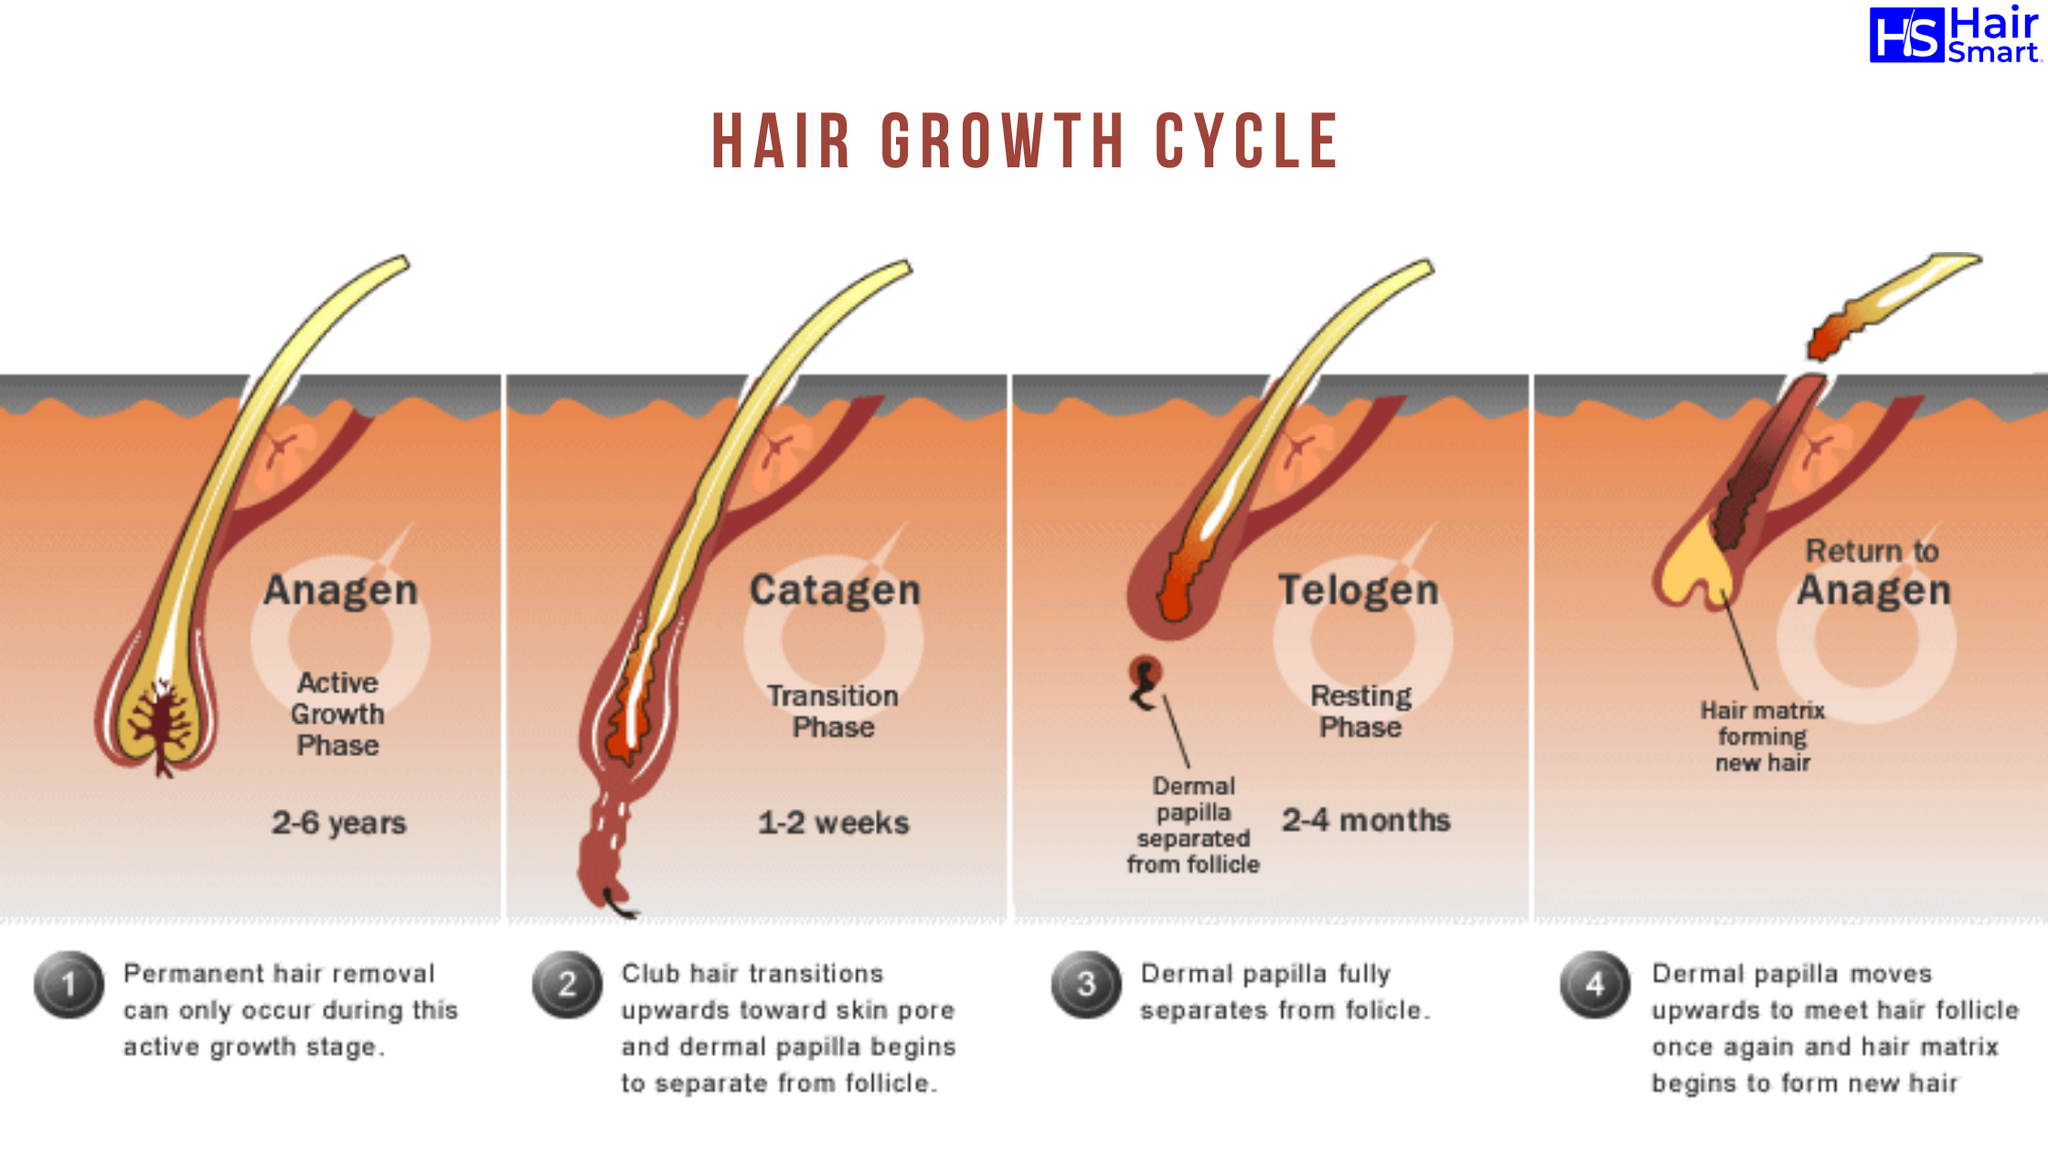 Стимулирование волос. Ресницы анаген катаген. Строение волоса и фазы роста. Анаген катаген телоген волос. Катаген фаза роста волос.